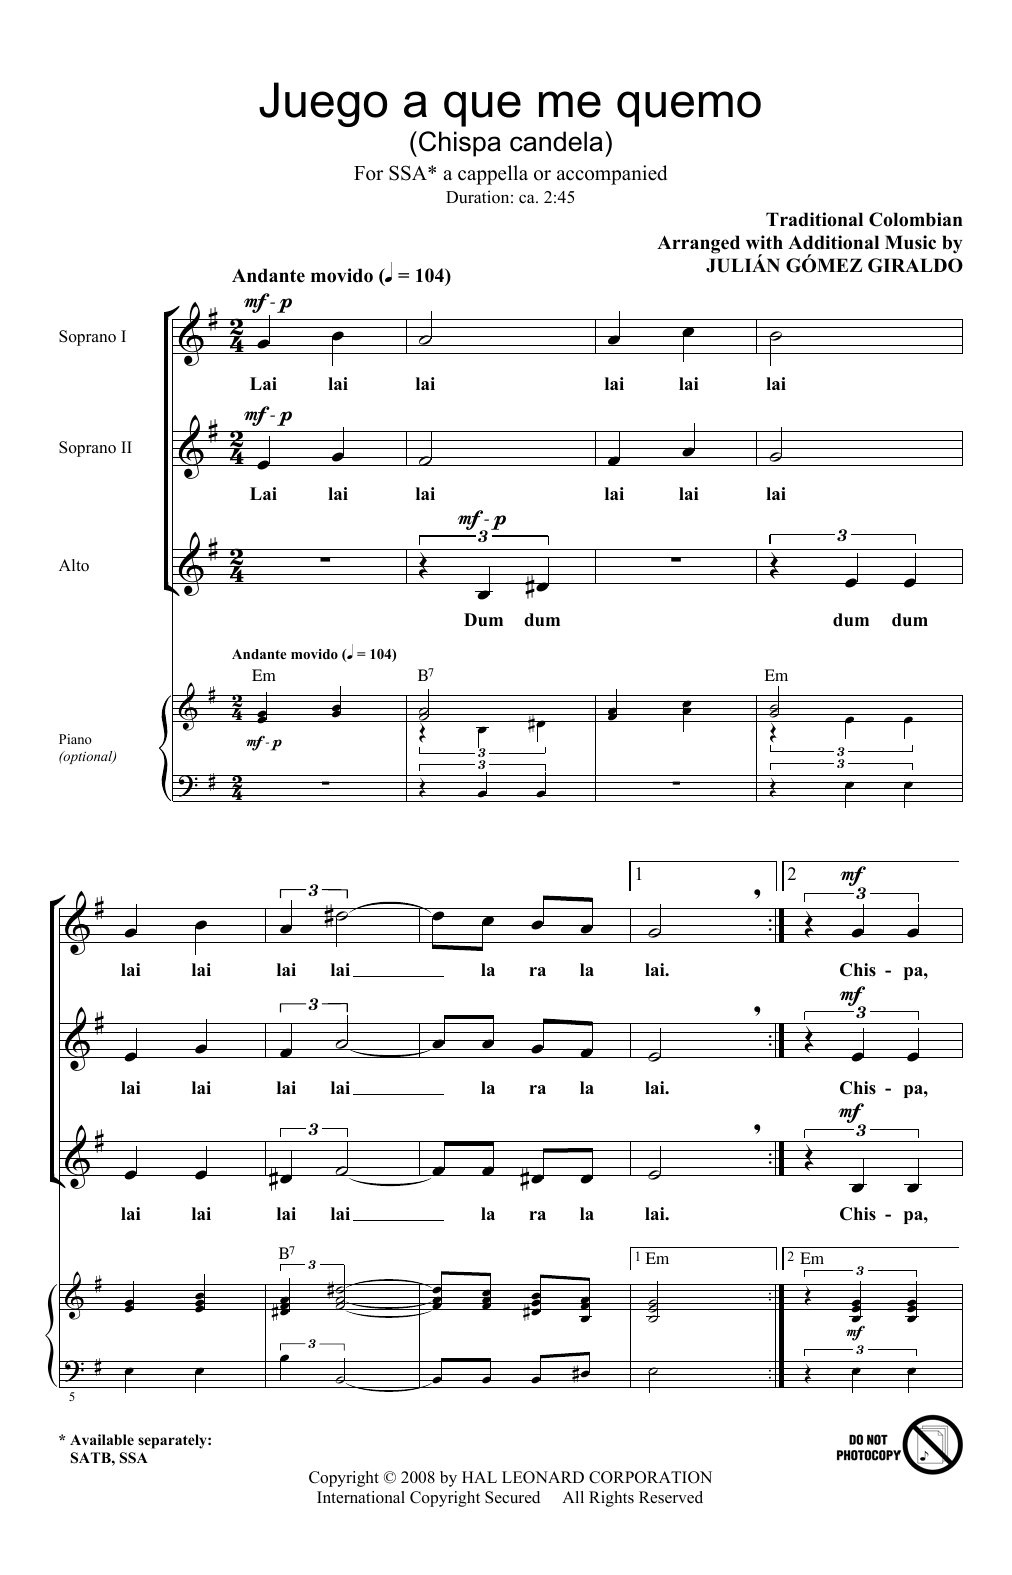 Julian Gomez Giraldo Juego A Que Me Quemo (Chispa Candela) sheet music notes and chords arranged for SSA Choir